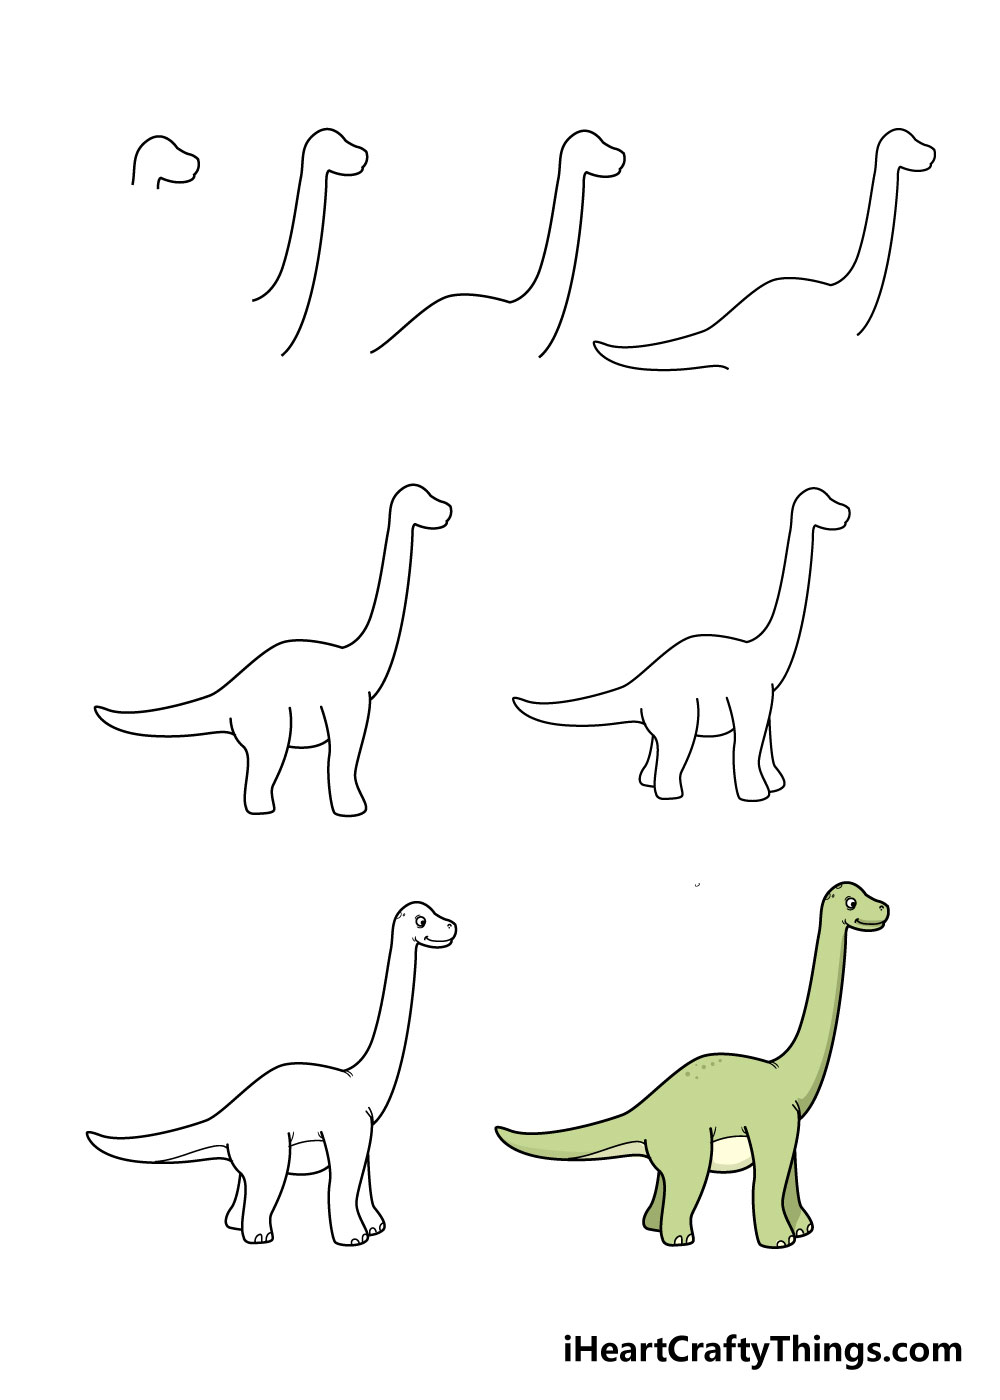 How To Draw Dinosaurs in 8 Steps - Hướng dẫn cách vẽ con khủng long đơn giản với 8 bước cơ bản